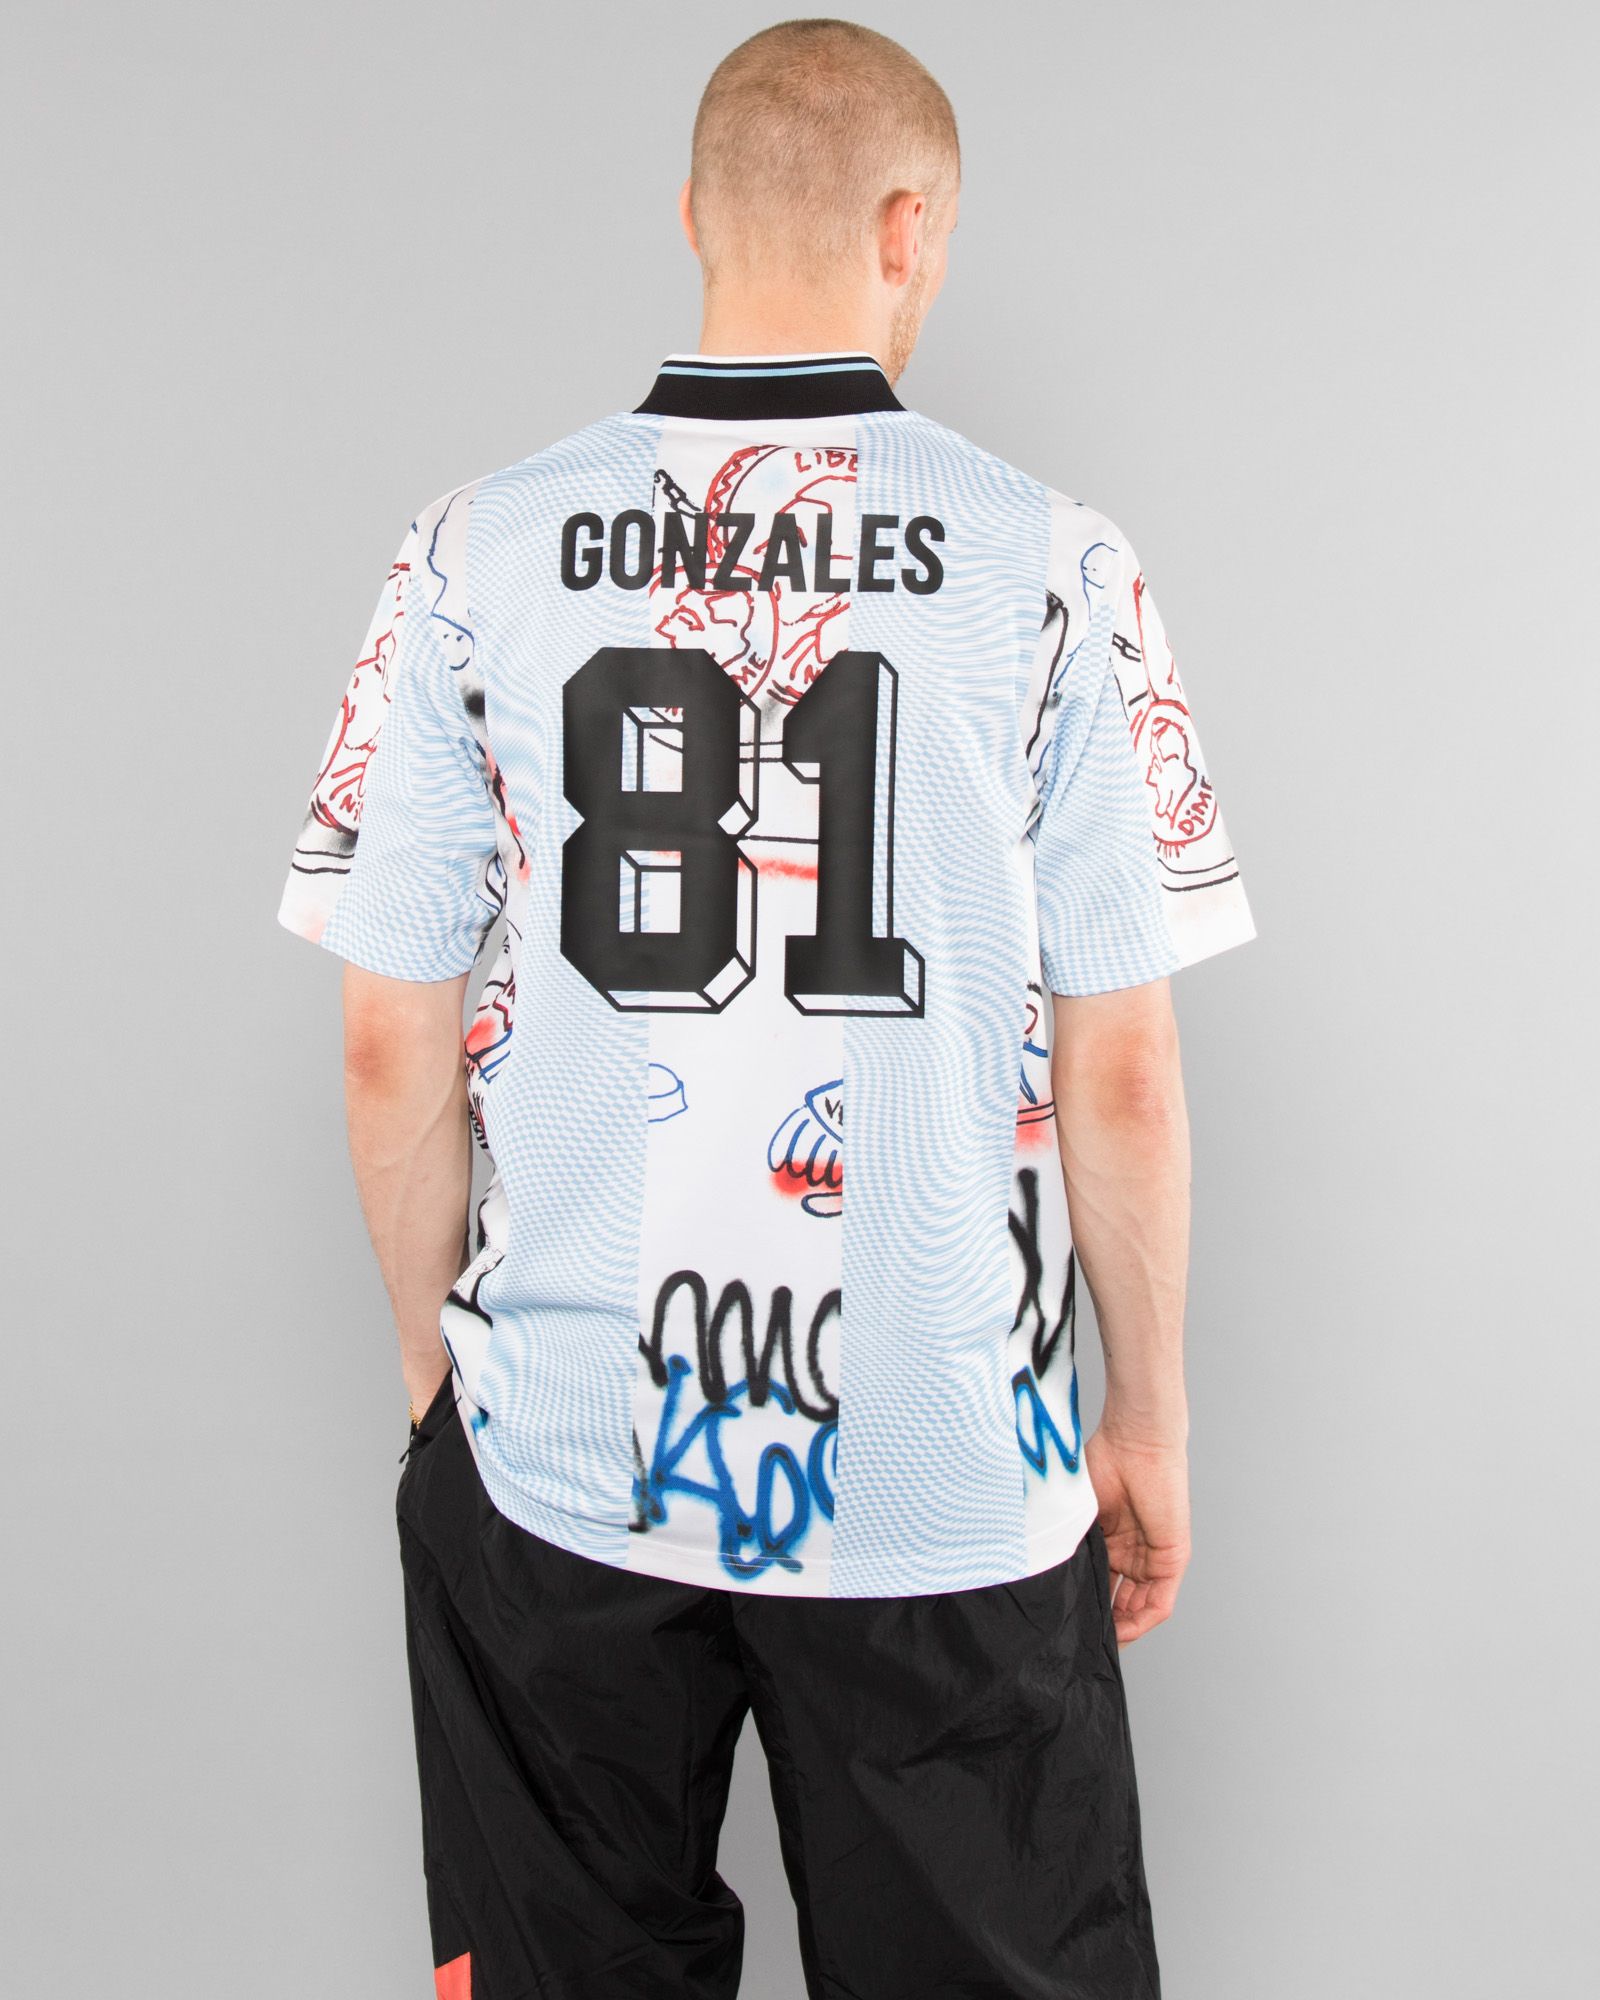 Gonzales Jersey adidas Originals Tops T-Shirts Black